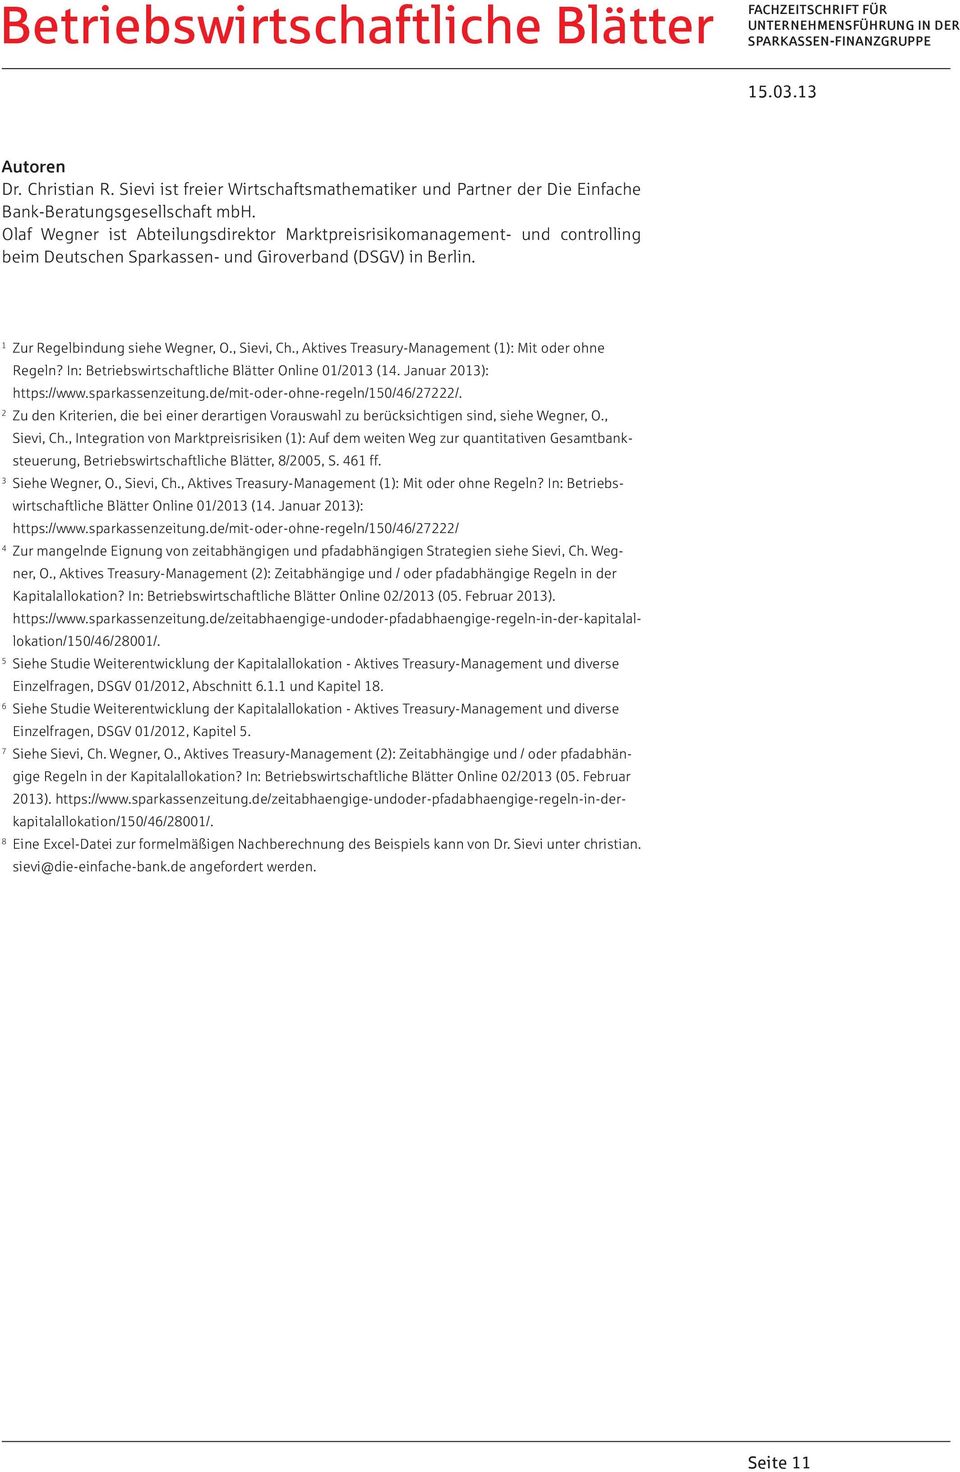 , Aktives Treasury-Management (1): Mit oder ohne Regeln? In: Betriebswirtschaftliche Blätter Online 01/2013 (14. Januar 2013): https://www.sparkassenzeitung.de/mit-oder-ohne-regeln/150/46/27222/.